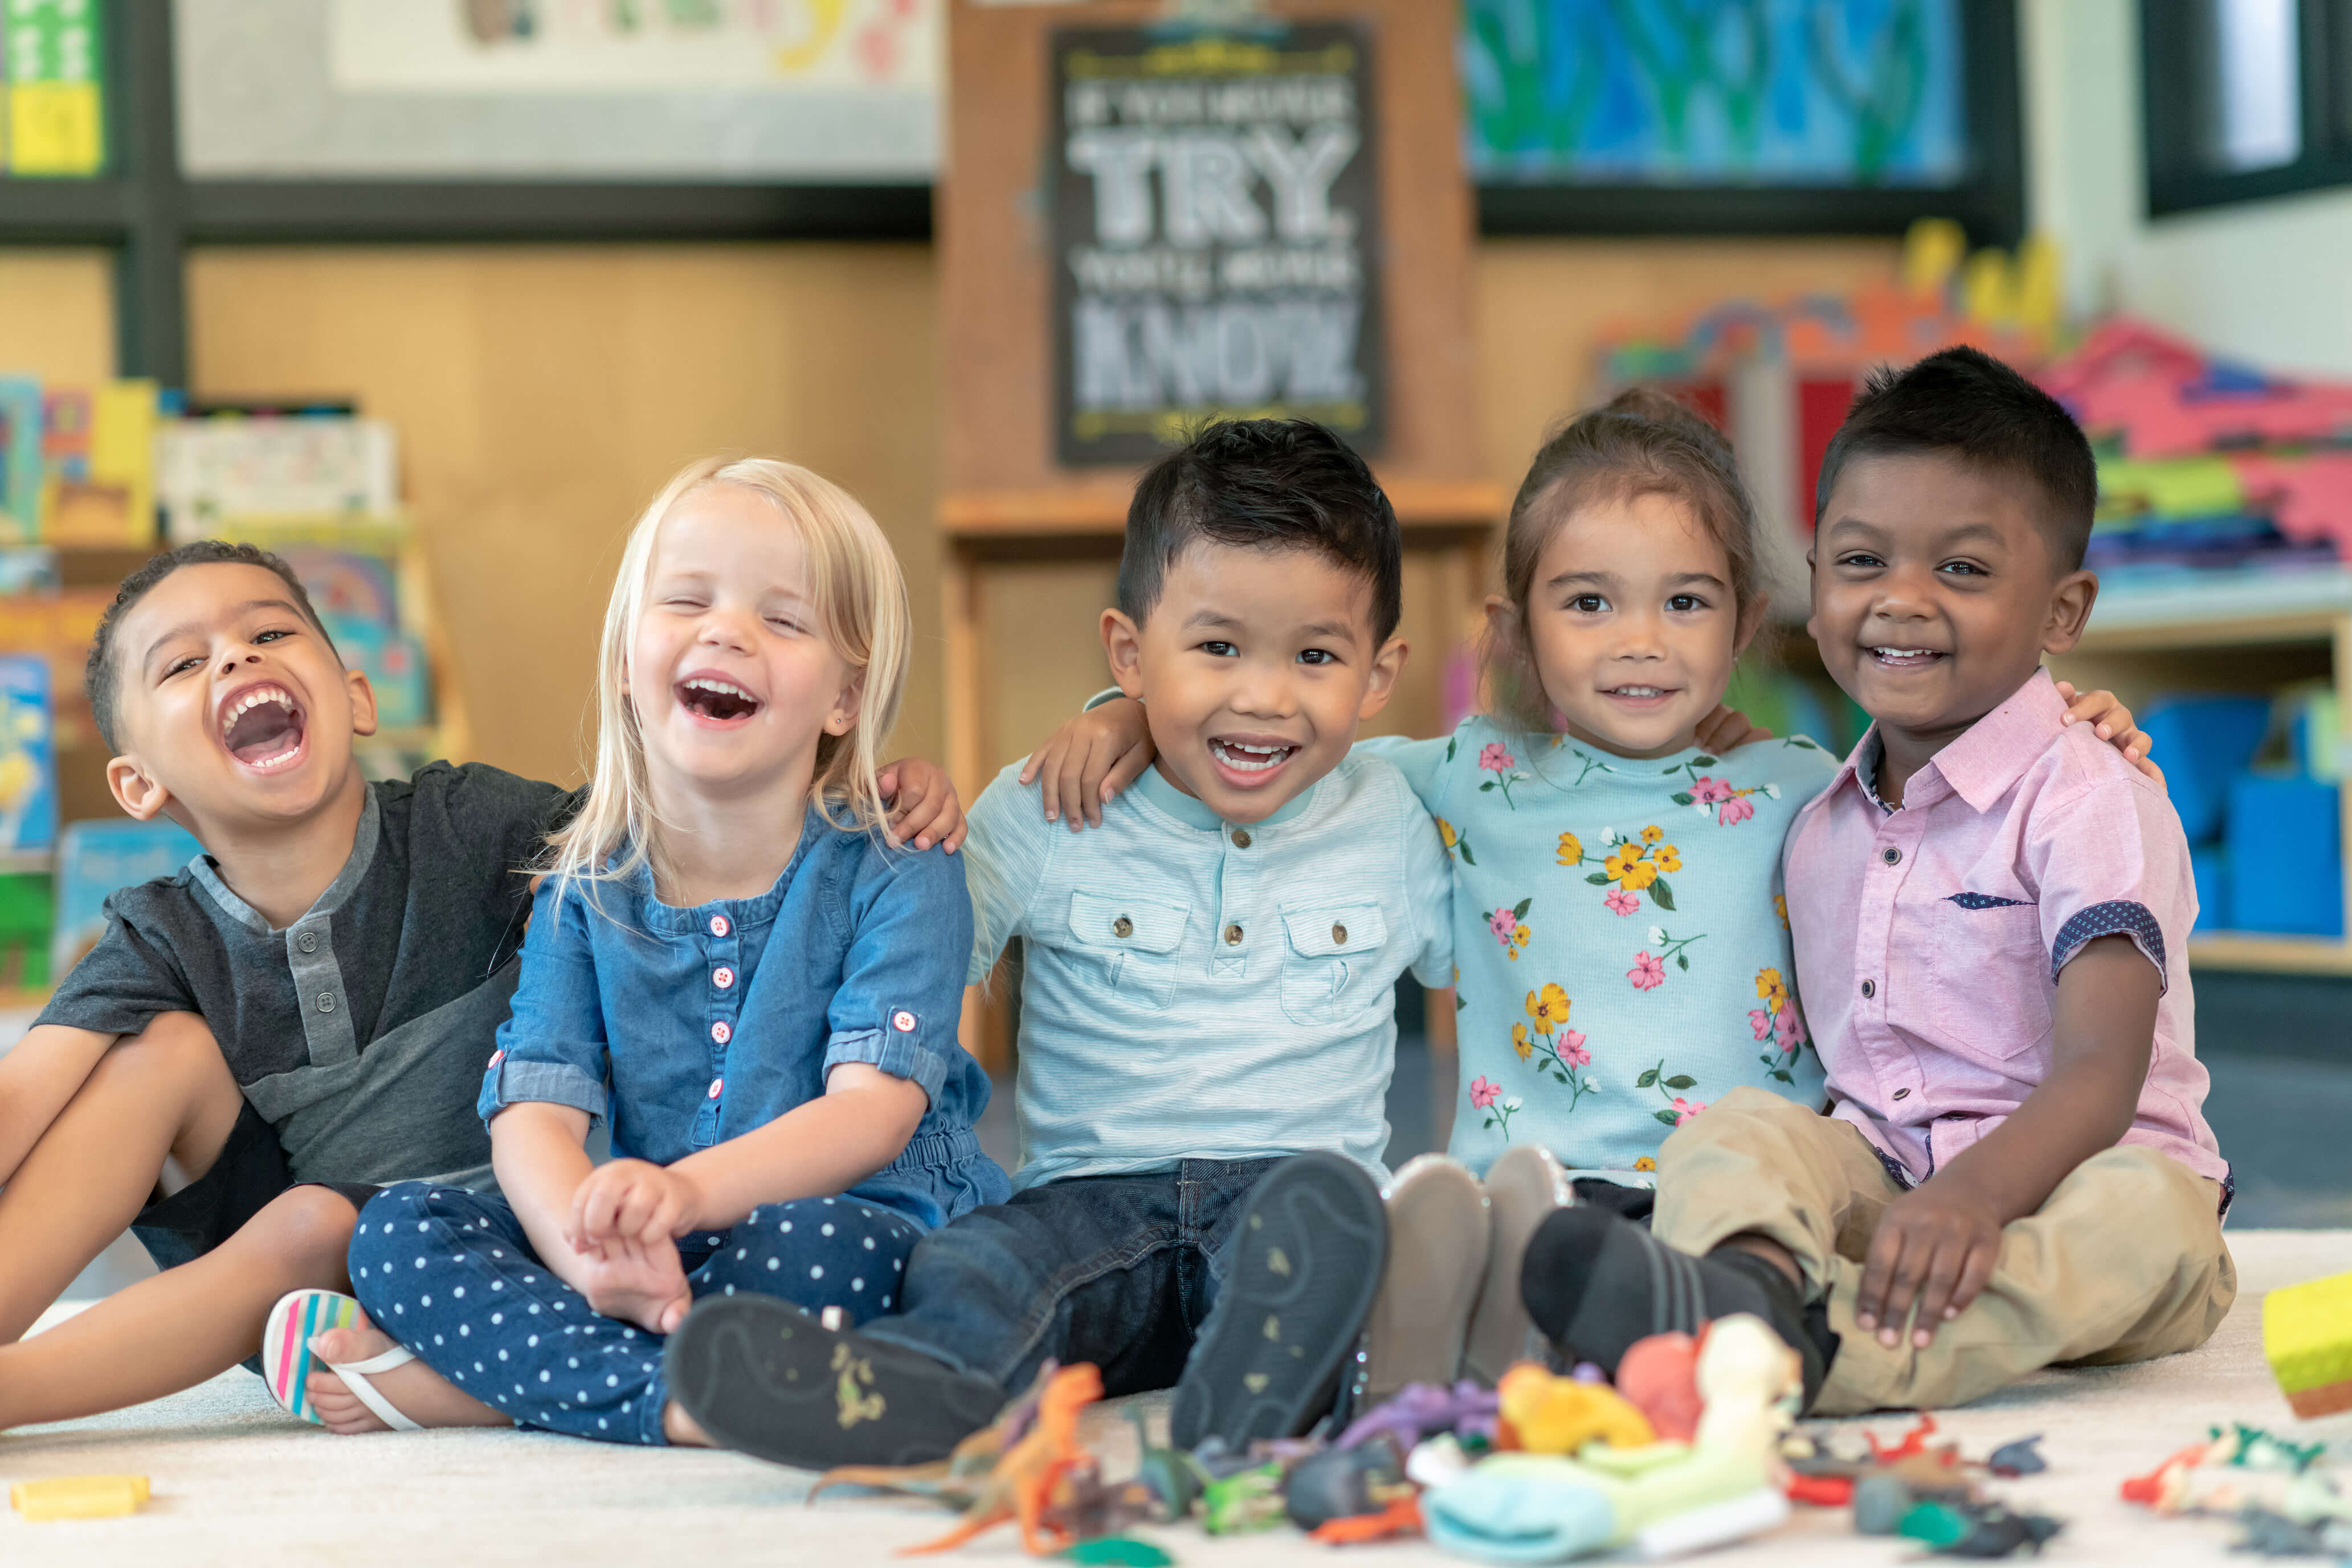 Cinco niños sentados en el suelo sonriendo y jugando con juguetes.